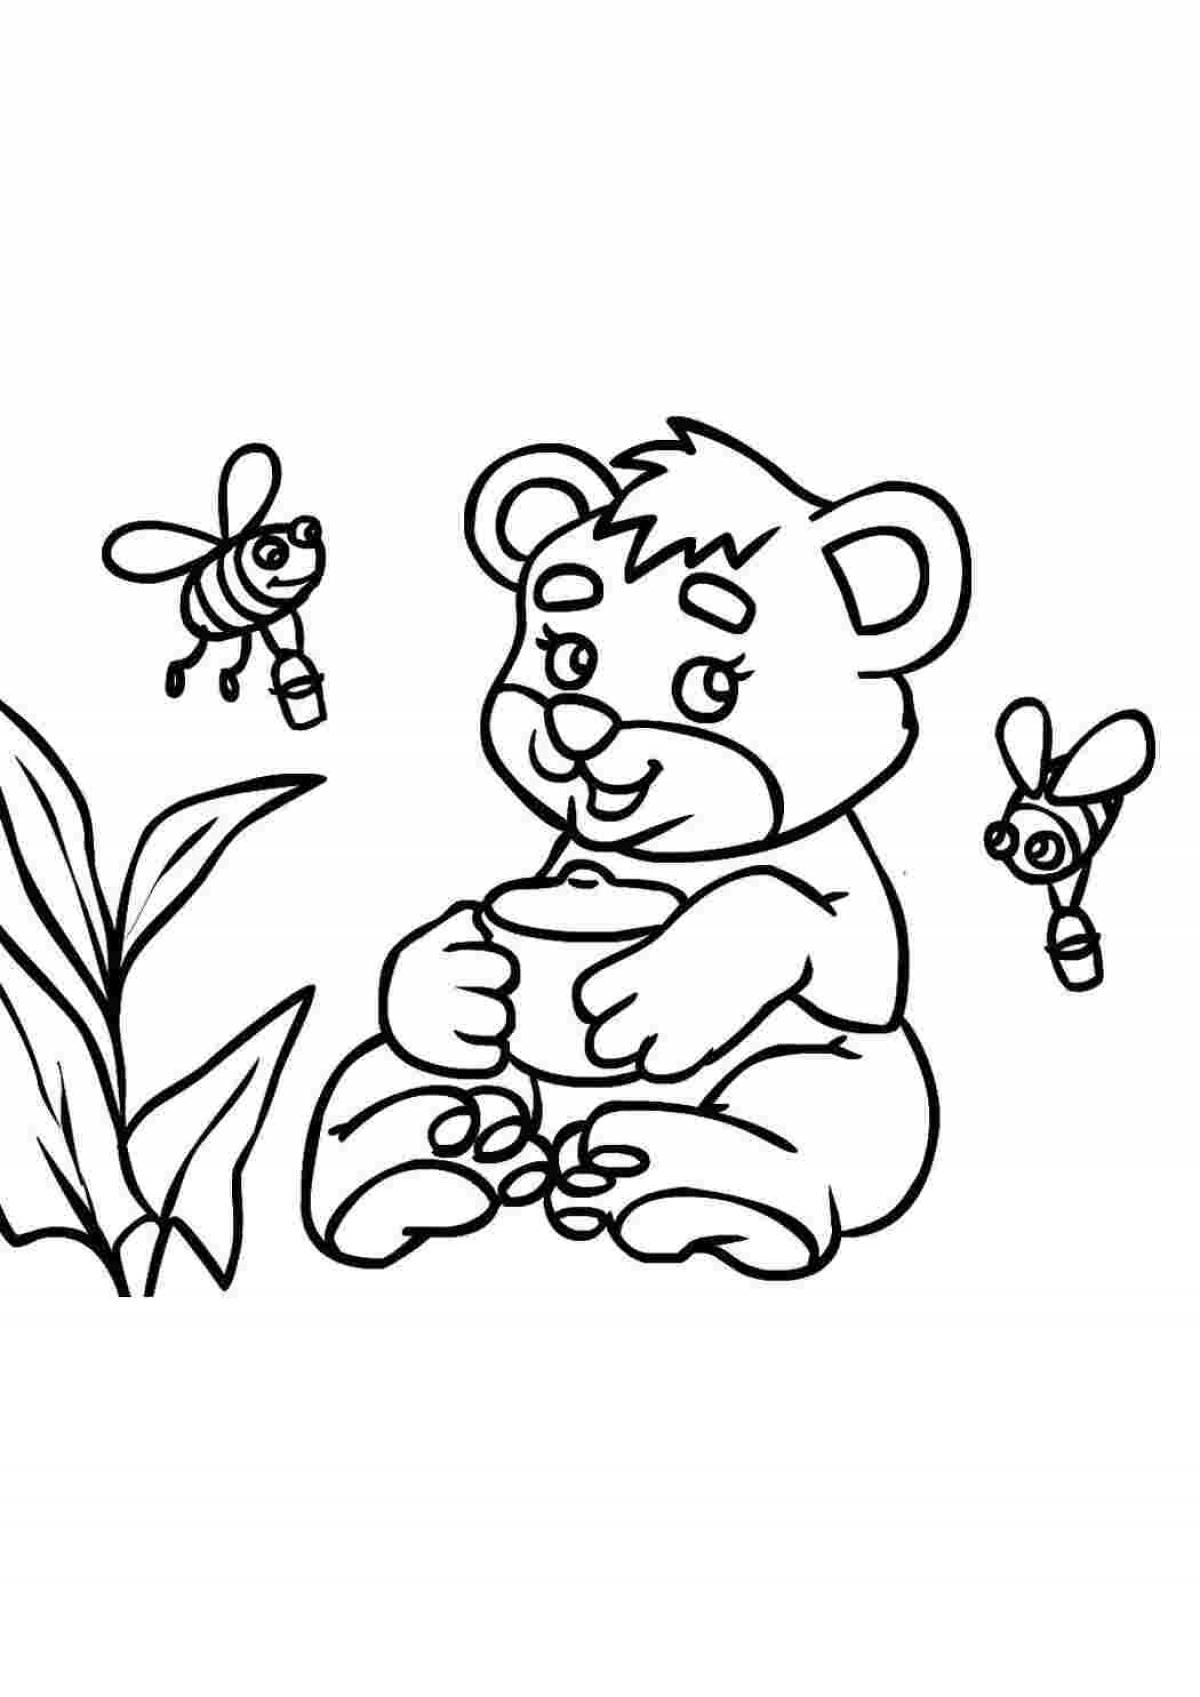 Творческая раскраска «Ми-ми-мишки. Увлекательные игры» 20 × 28 см. Скрепка. 14 стр.